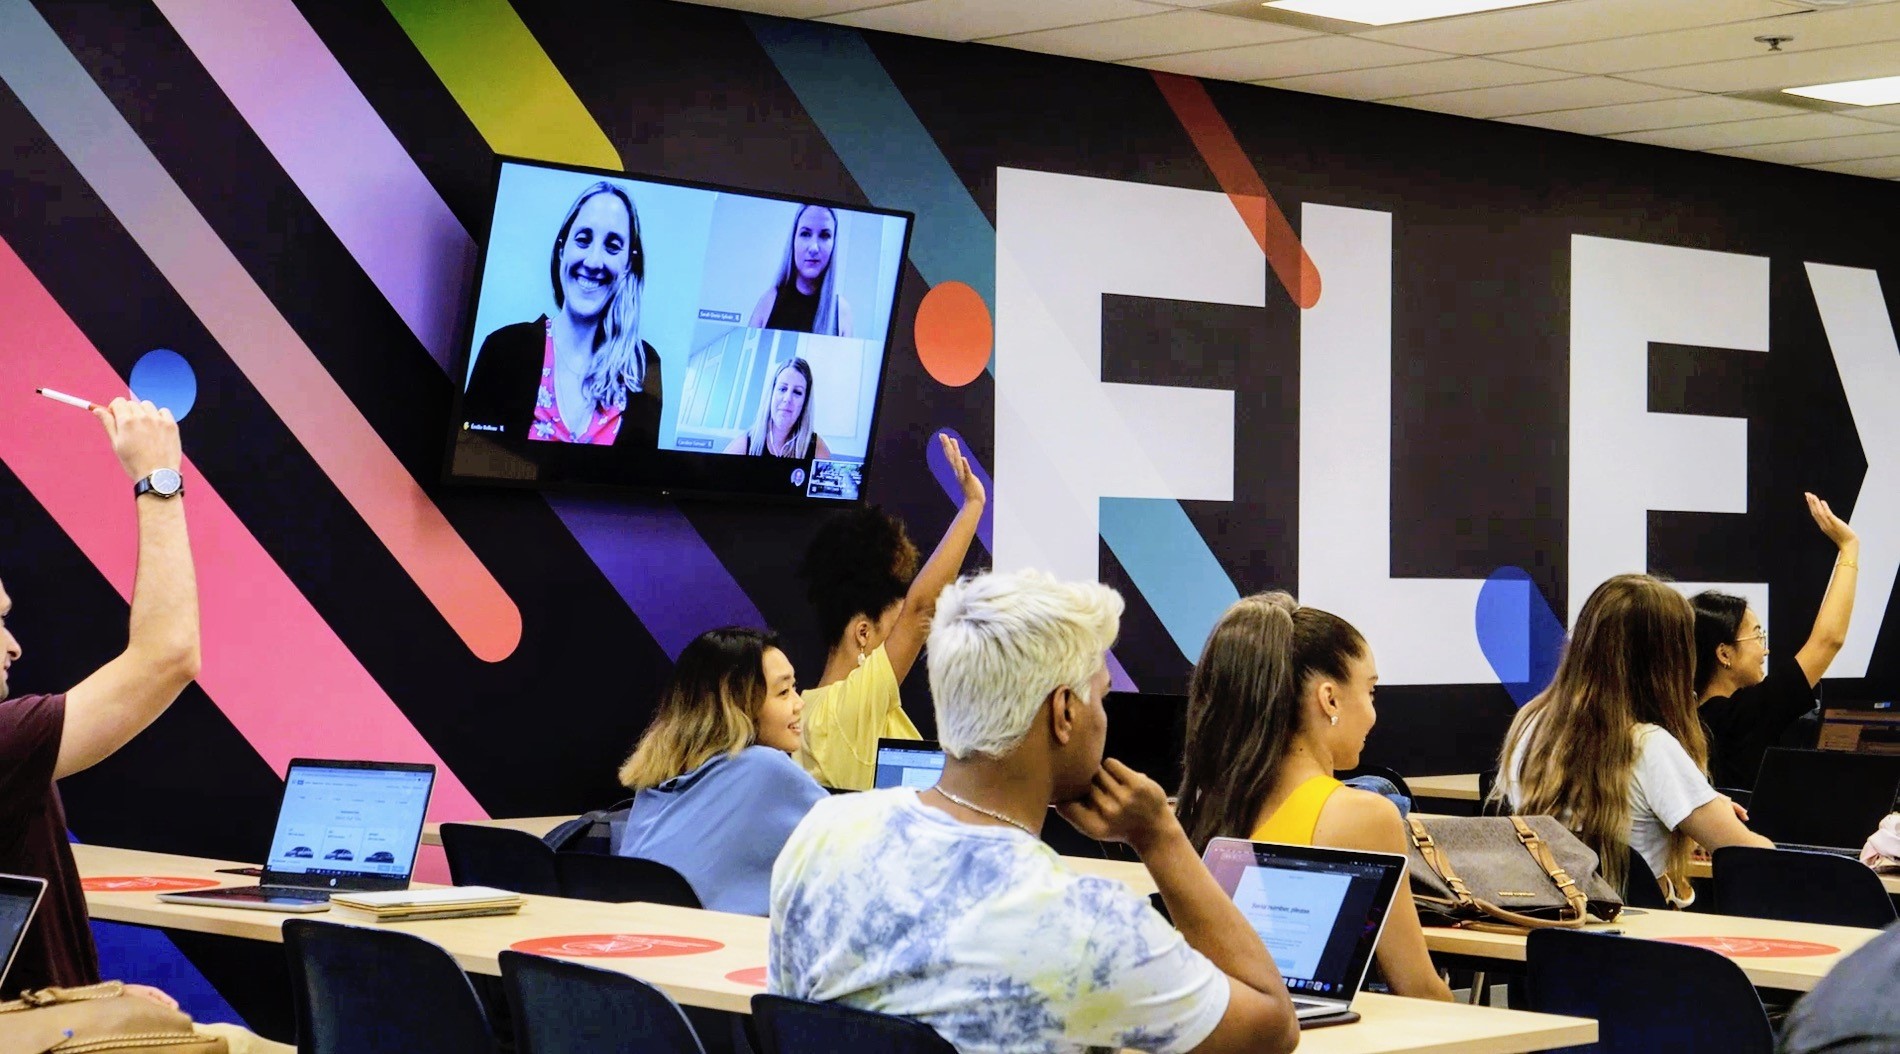 Des étudiants dans une classe Flex. Le mur du côté de la salle est ornée d’une murale colorée où on lit « Flex ». Un grand écran fixé au mur permet de voir des personnes qui participent à distance. Dans la classe, plusieurs étudiantes ont la main levée. La plupart des élèves présents ont un ordinateur portable.